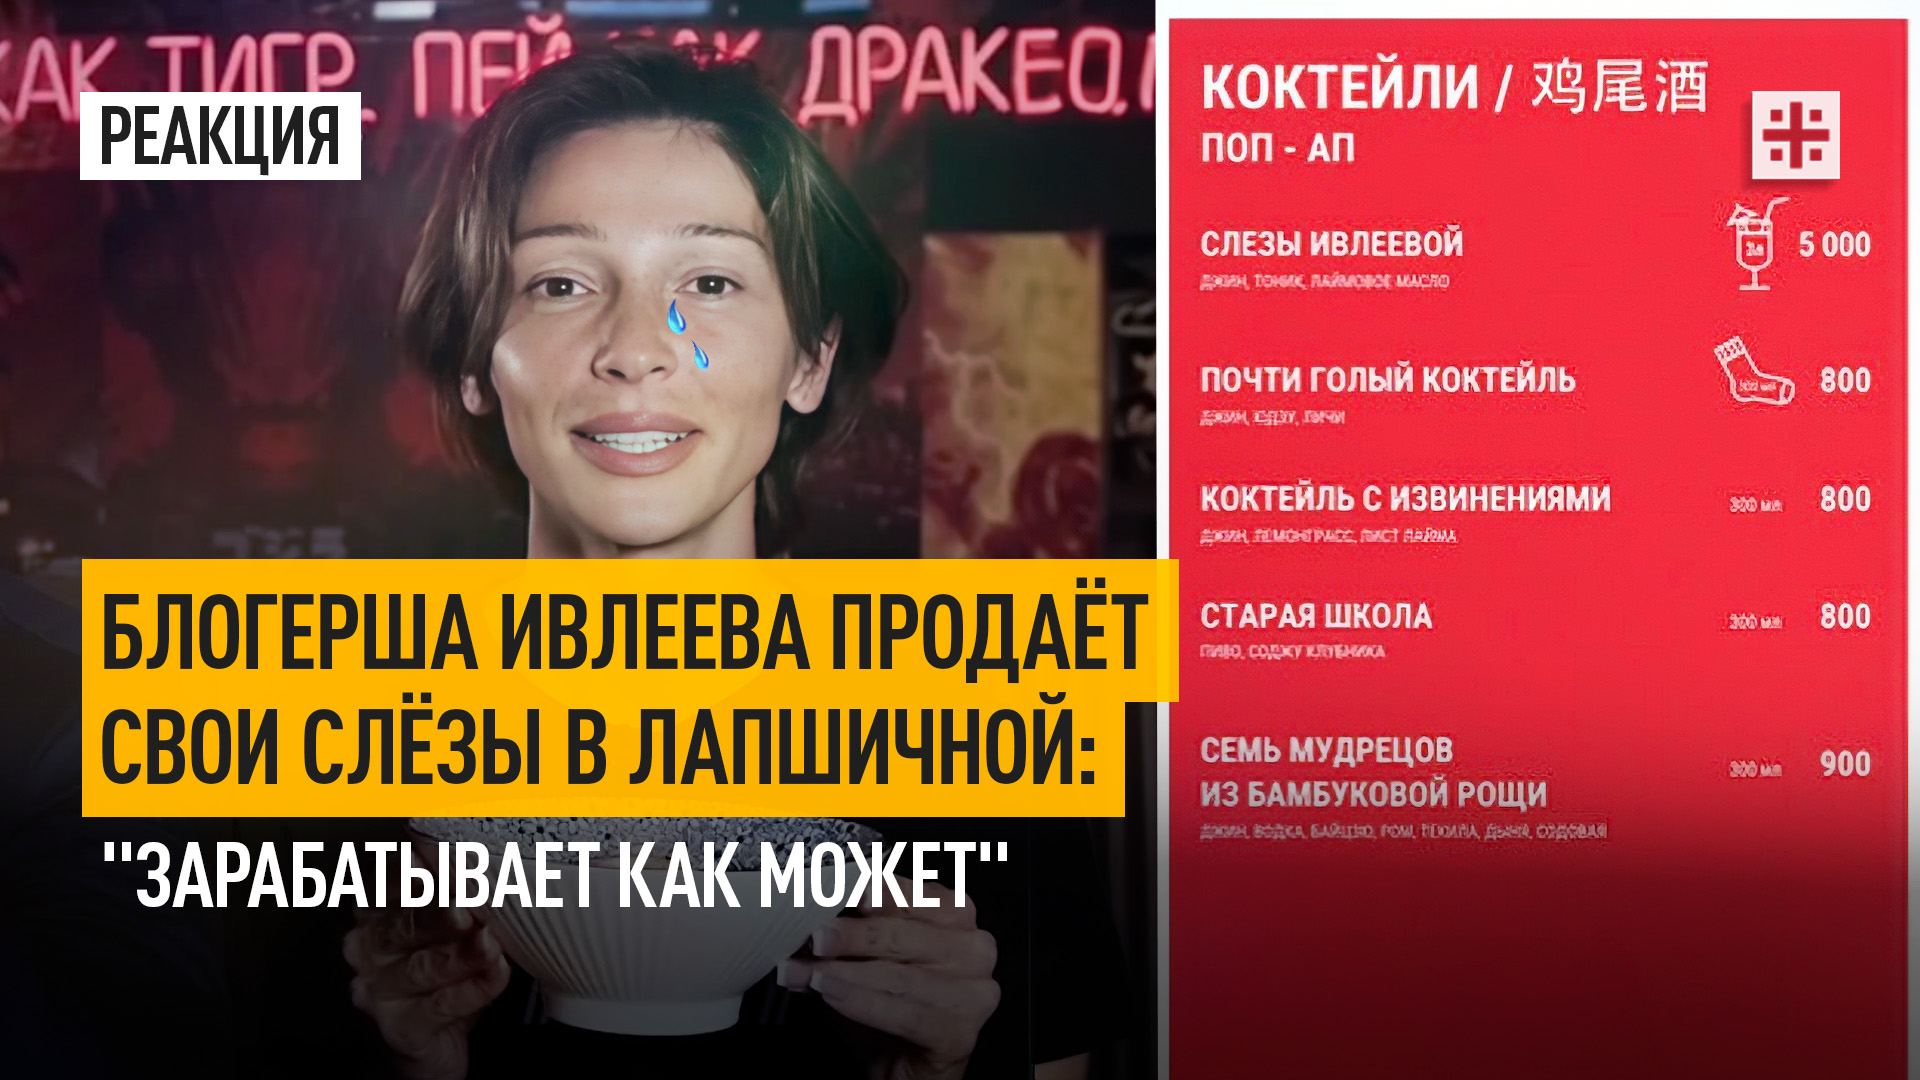 Блогерша Ивлеева продаёт свои слёзы в лапшичной: "Зарабатывает как может"